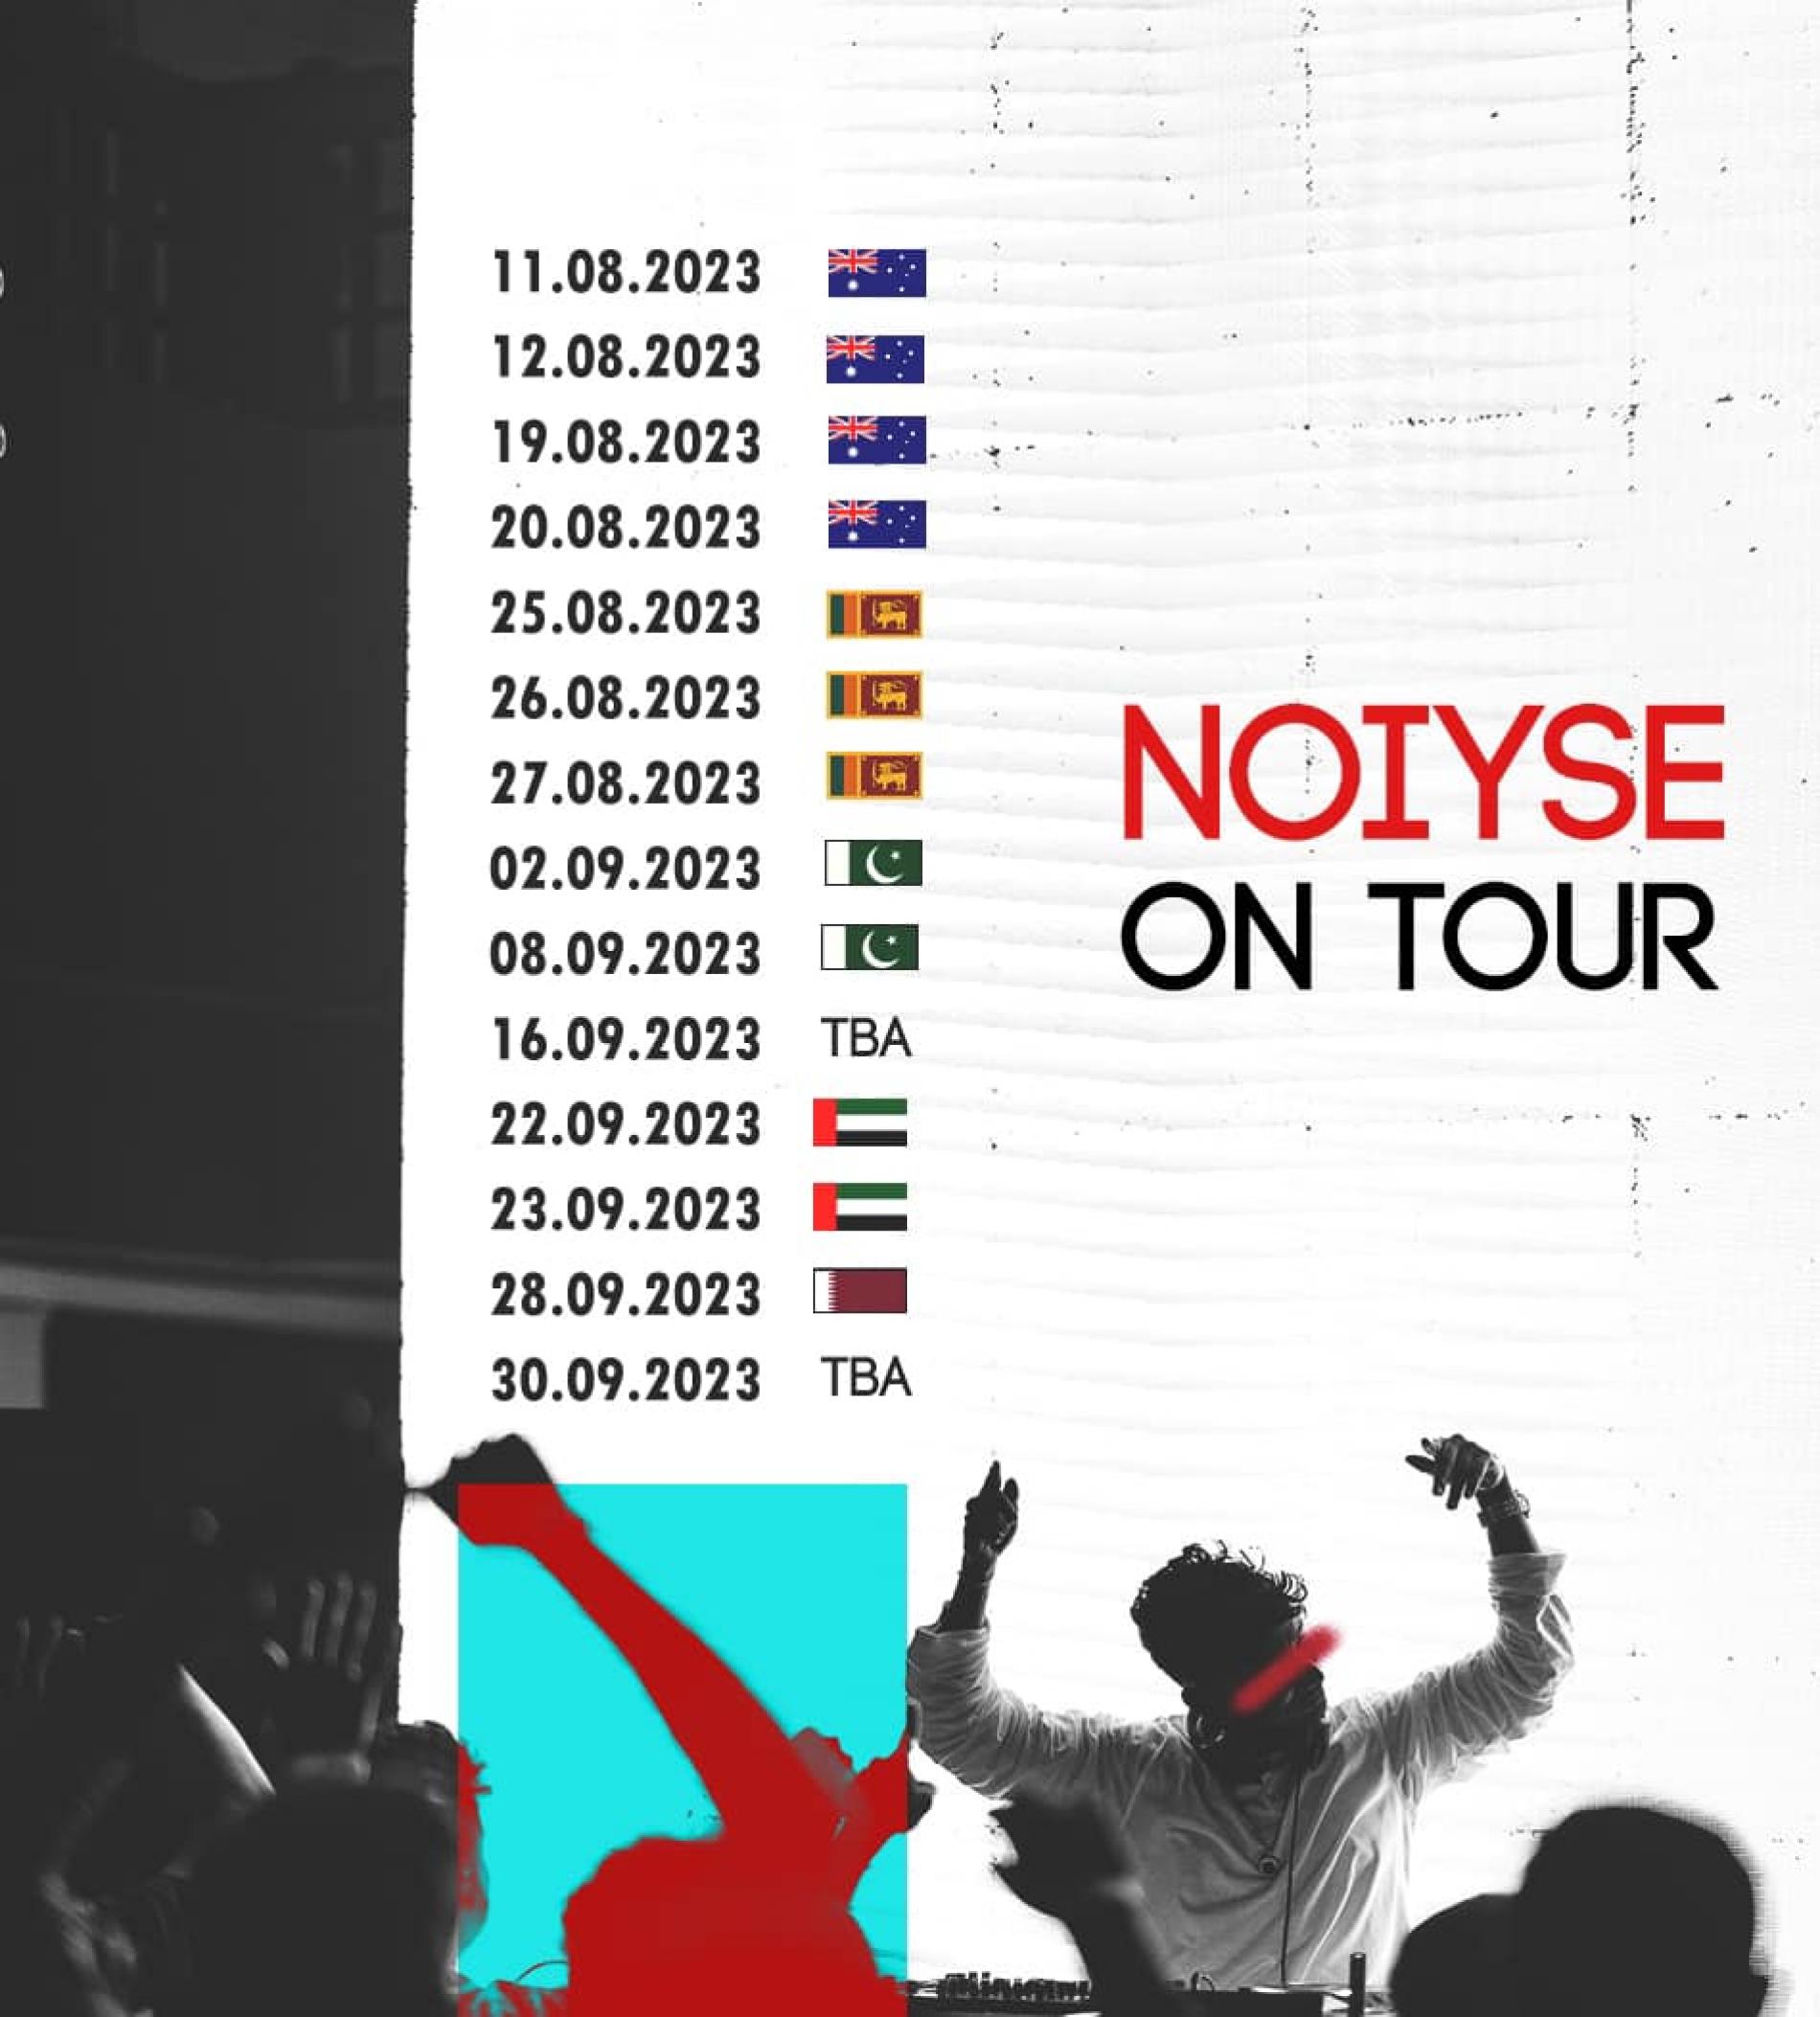 News : Noiyse Project Announces Tour Dates